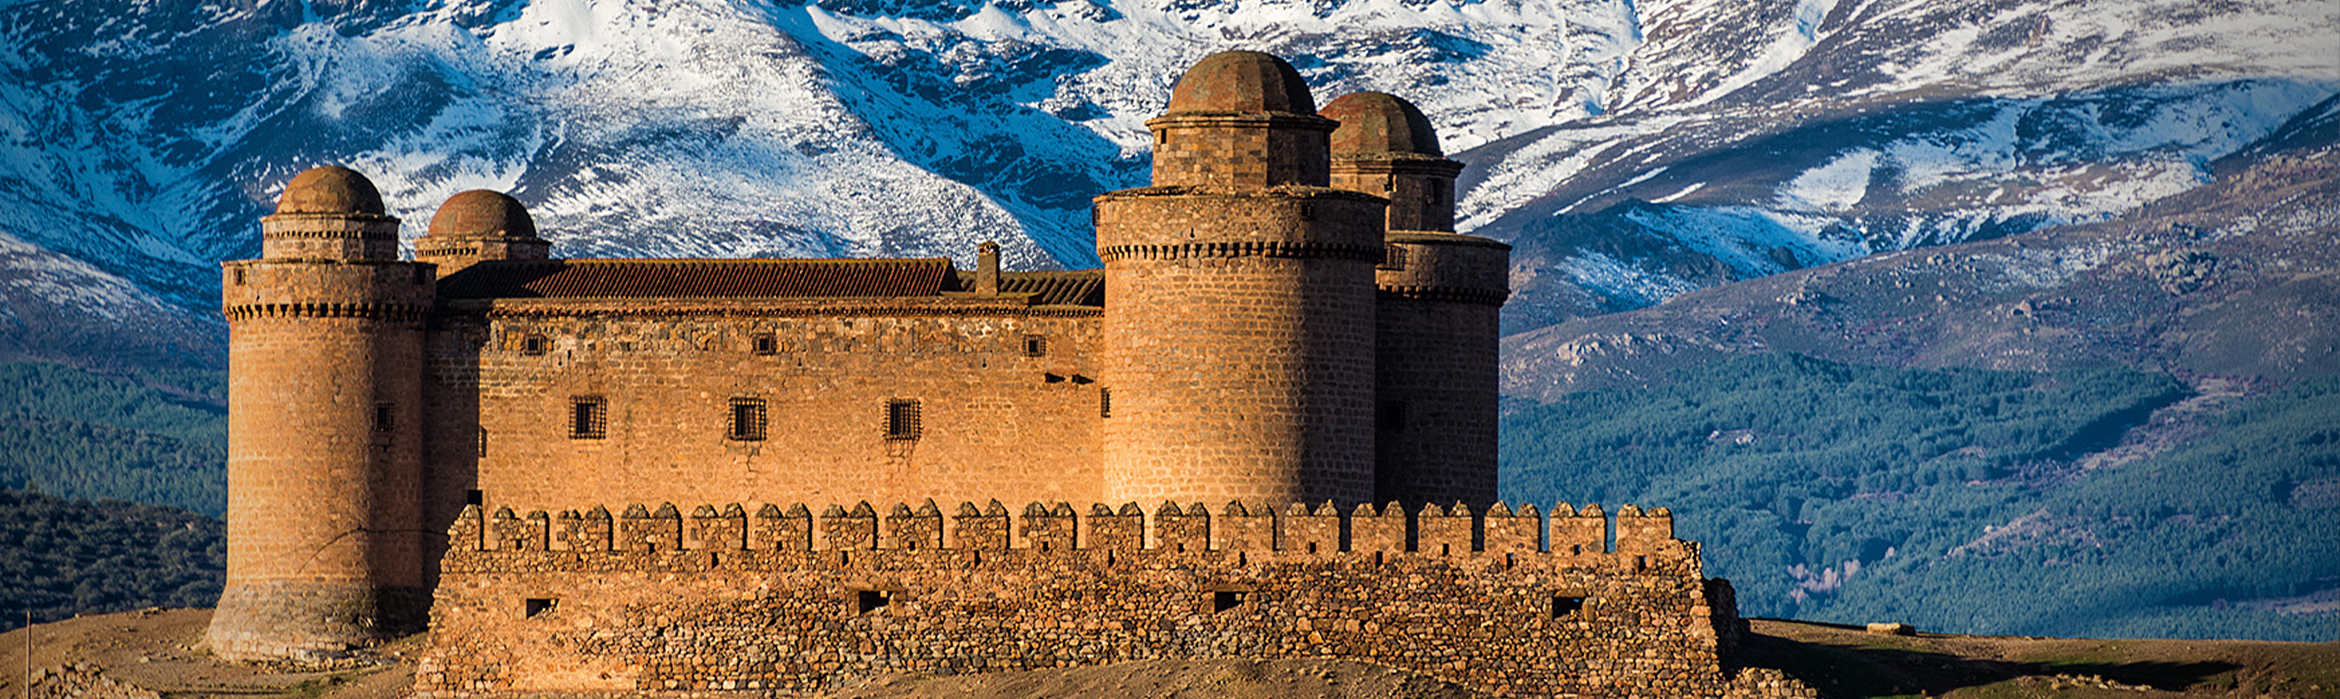 Castillo de La Calahorra, localidad de la comarca de Guadix, con Sierra Nevada de fondo